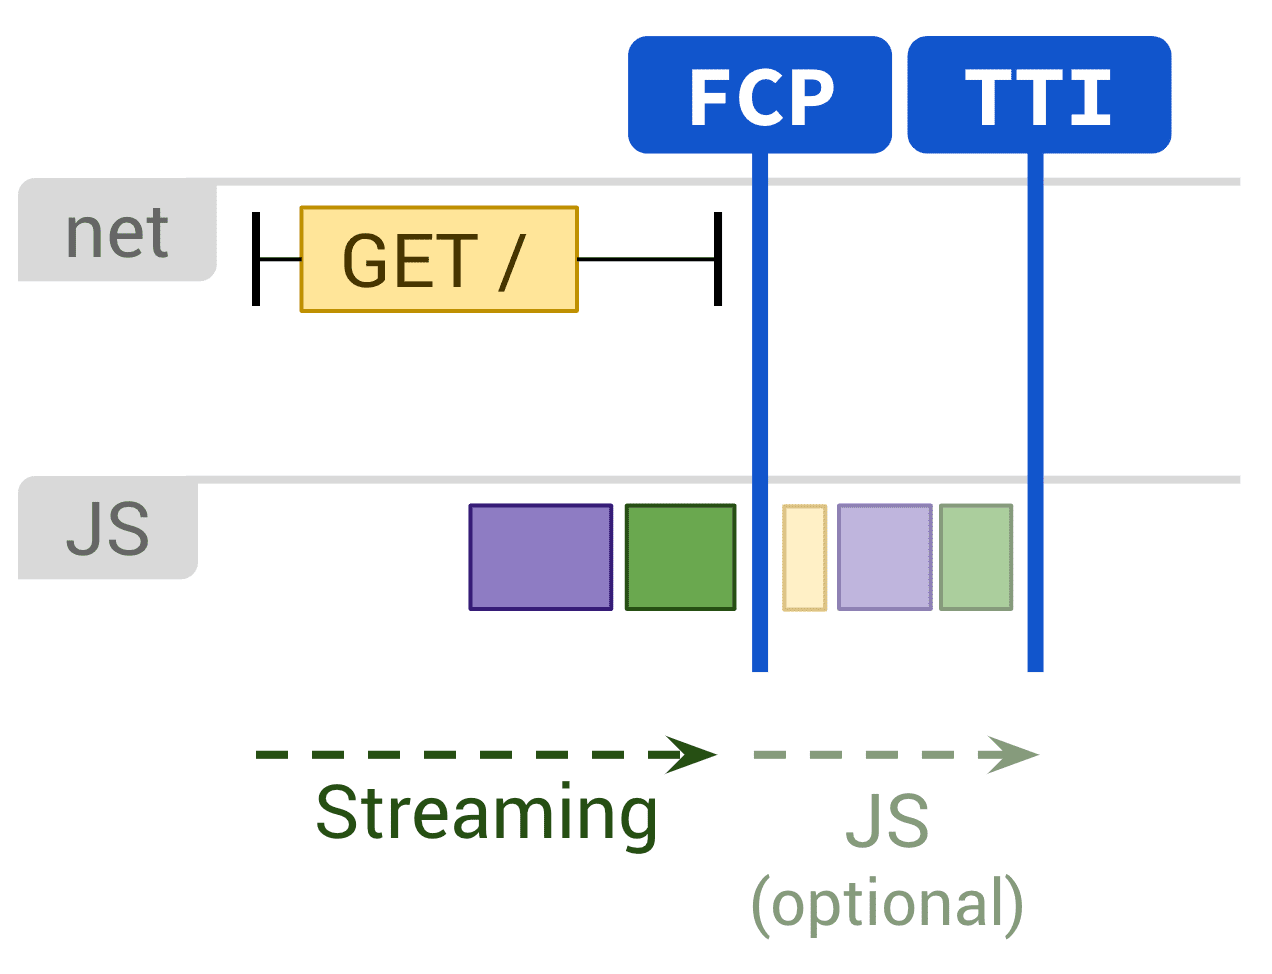 แผนภาพแสดงการแสดงผลแบบคงที่และการดำเนินการ JS ที่ไม่บังคับซึ่งส่งผลต่อ FCP และ TTI